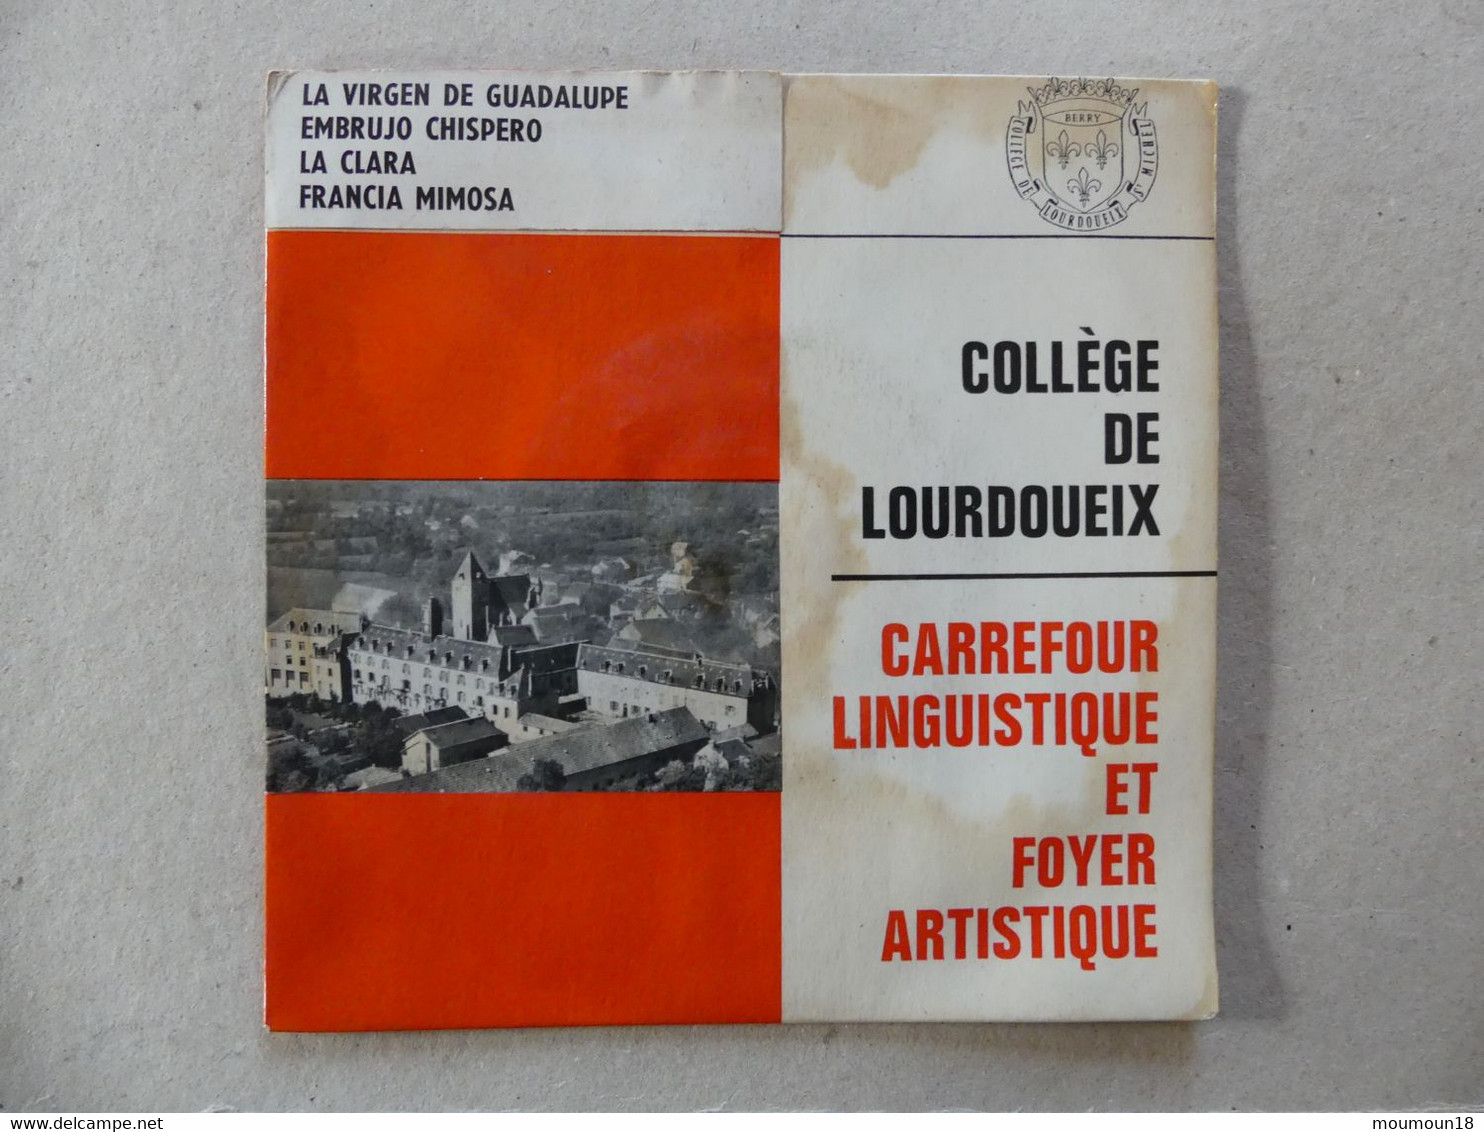 45 T College De Lourdoueix Carrefour Linguistique Et Foyer Artistique Matilla Ramos - Other - Spanish Music